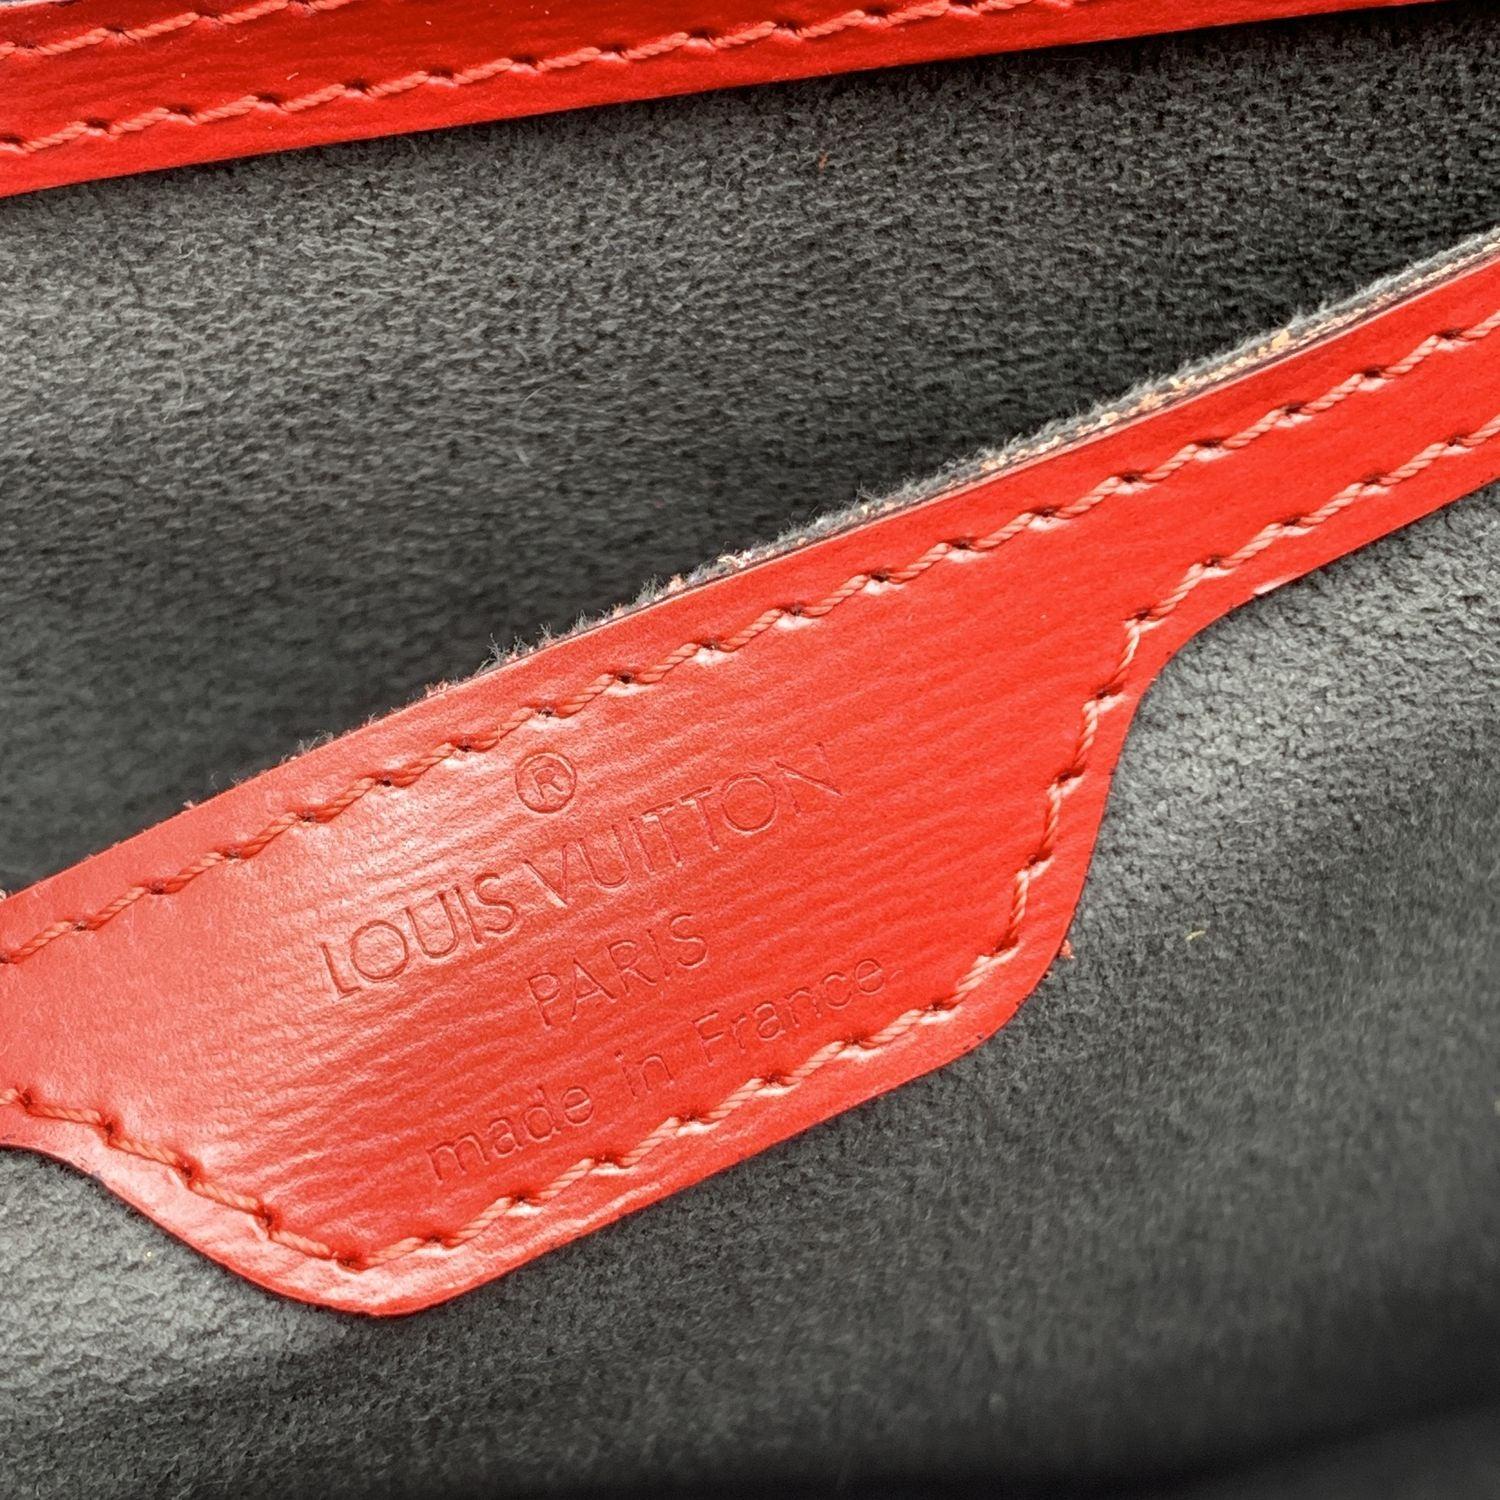 Louis Vuitton Vintage Red Epi Leather Saint Jacques PM Bag For Sale 3